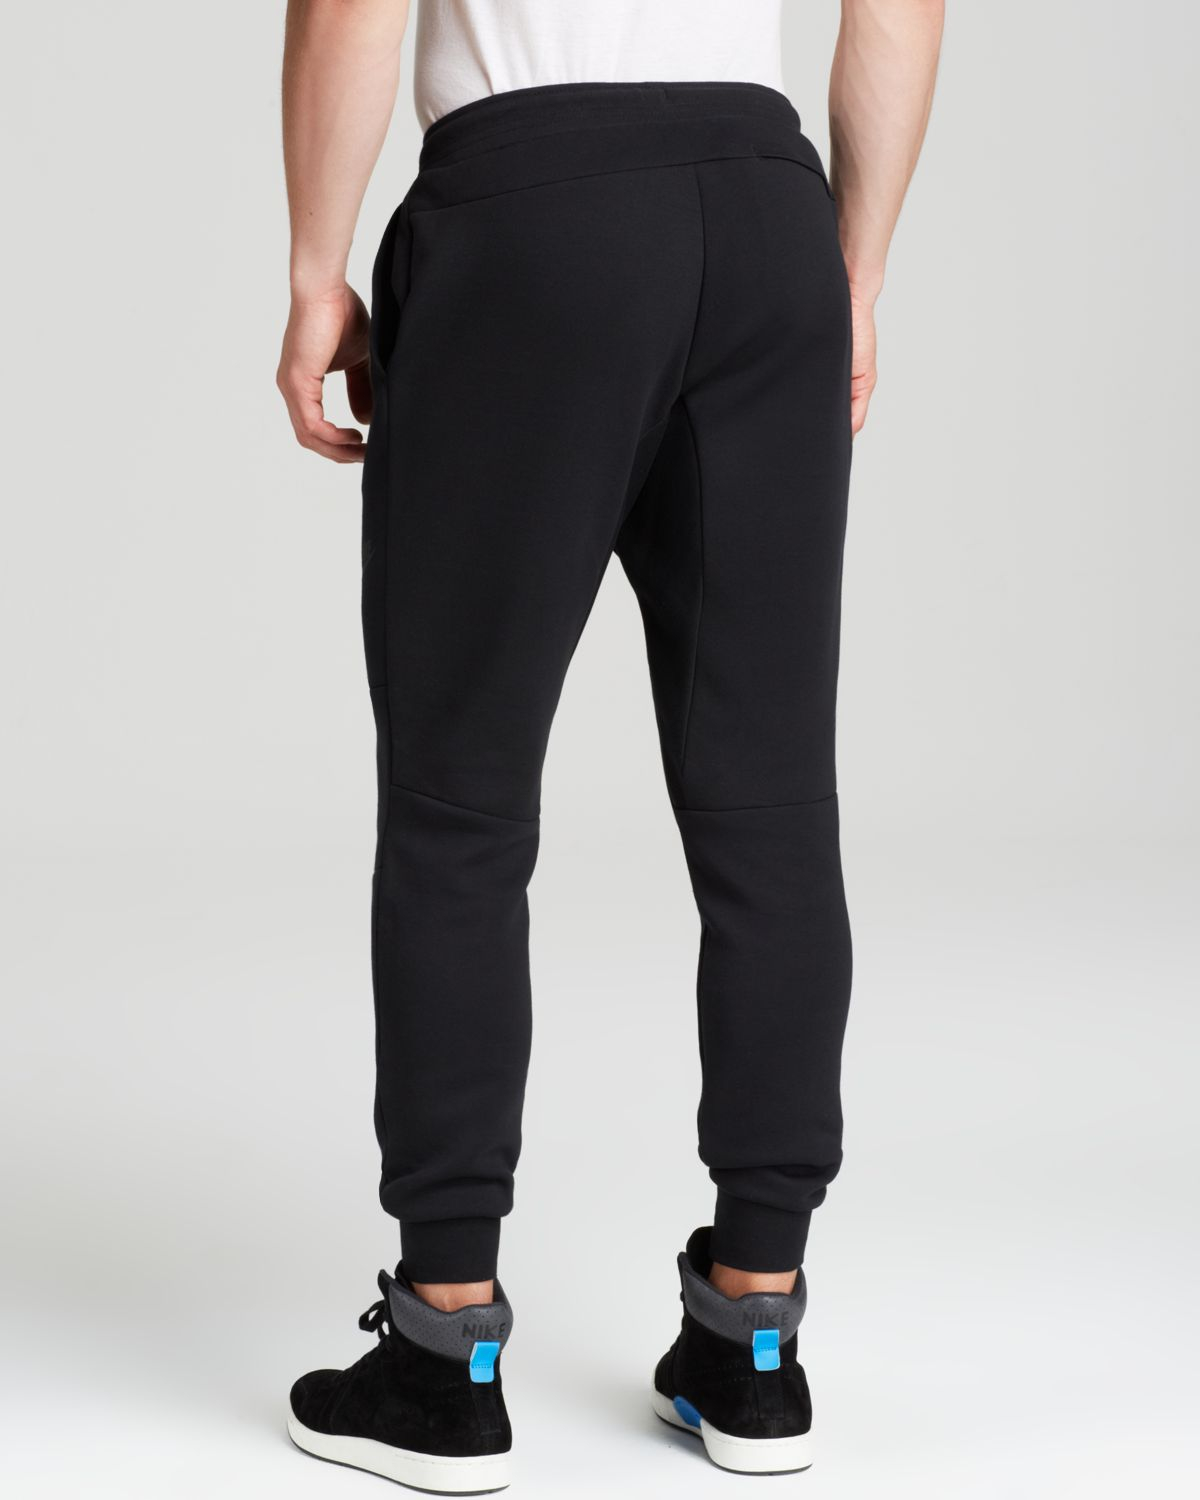 Nike Tech Fleece Sweatpants in Black for Men - Lyst